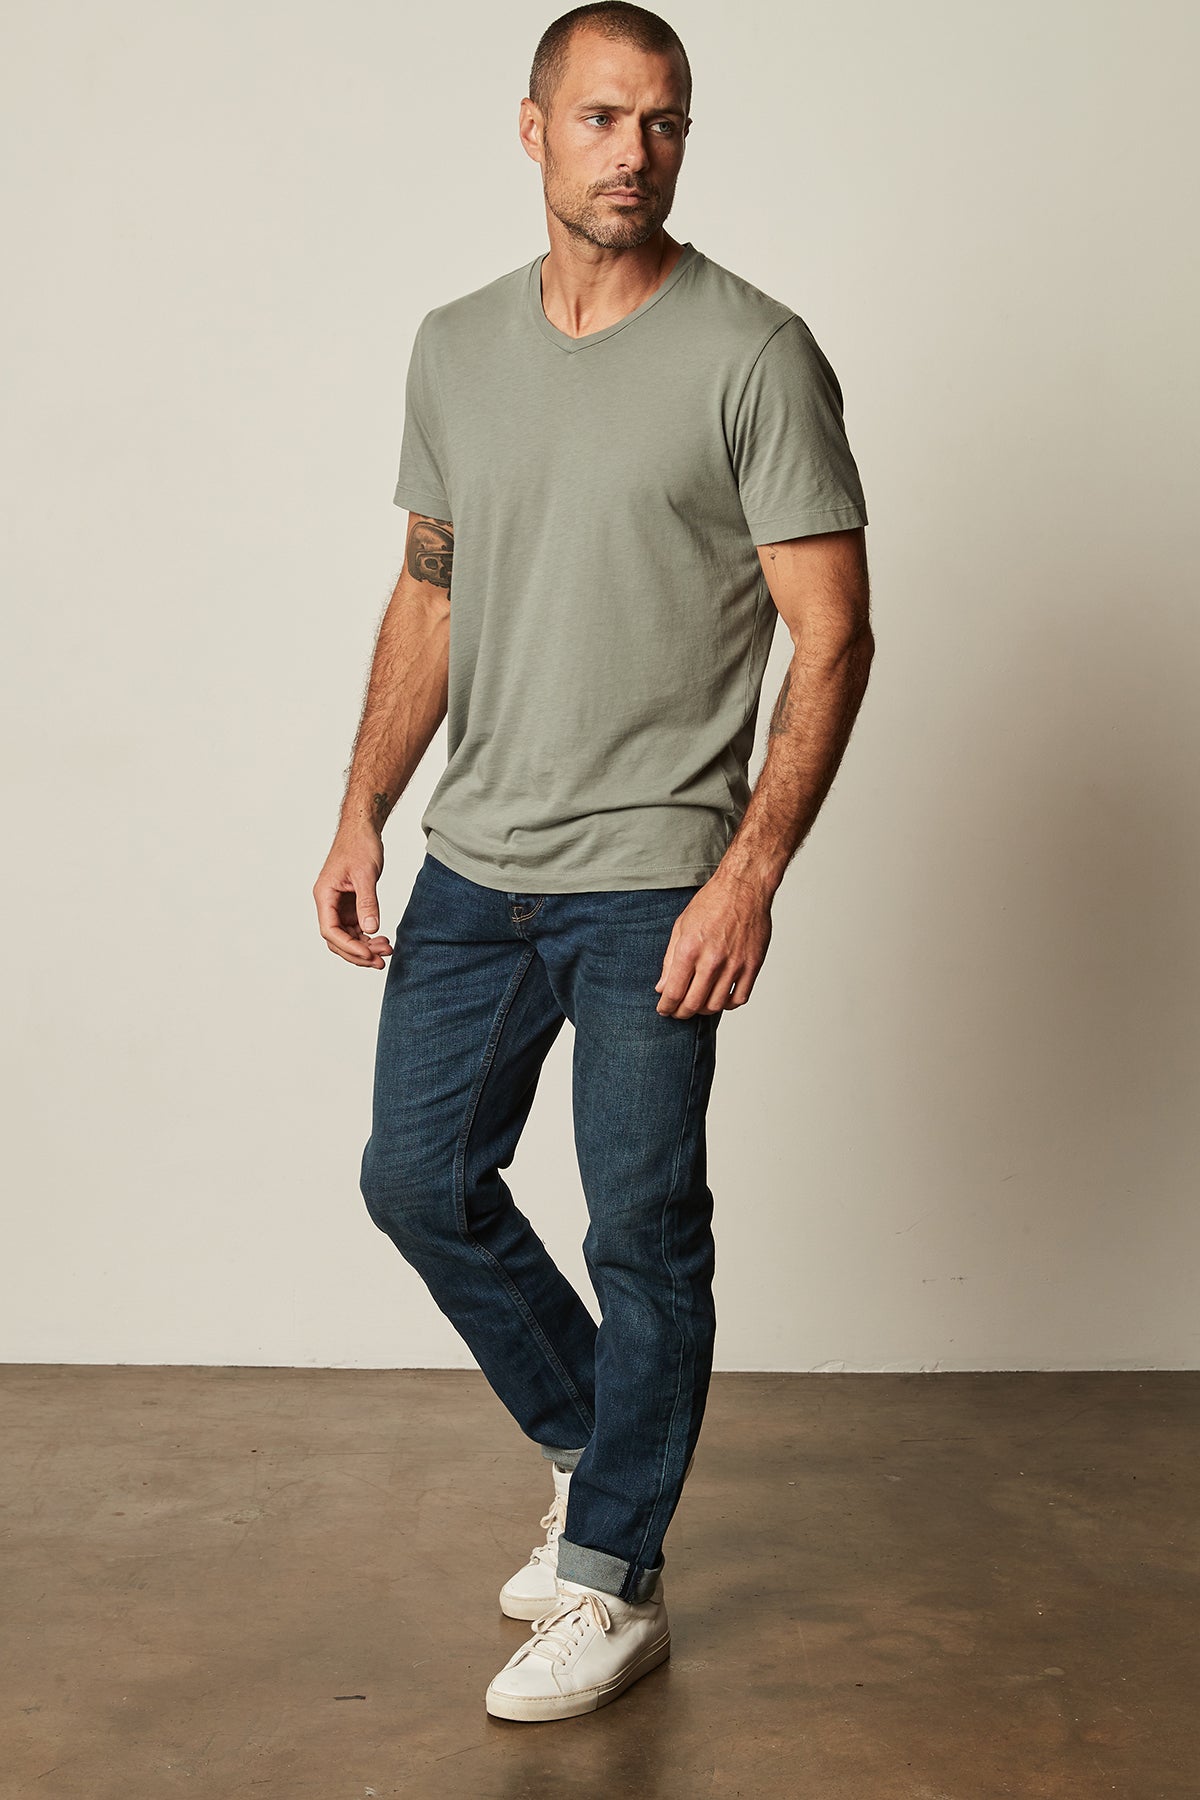 a man wearing a Velvet by Graham & Spencer SAMSEN WHISPER CLASSIC V-NECK TEE and jeans.-25793905819841